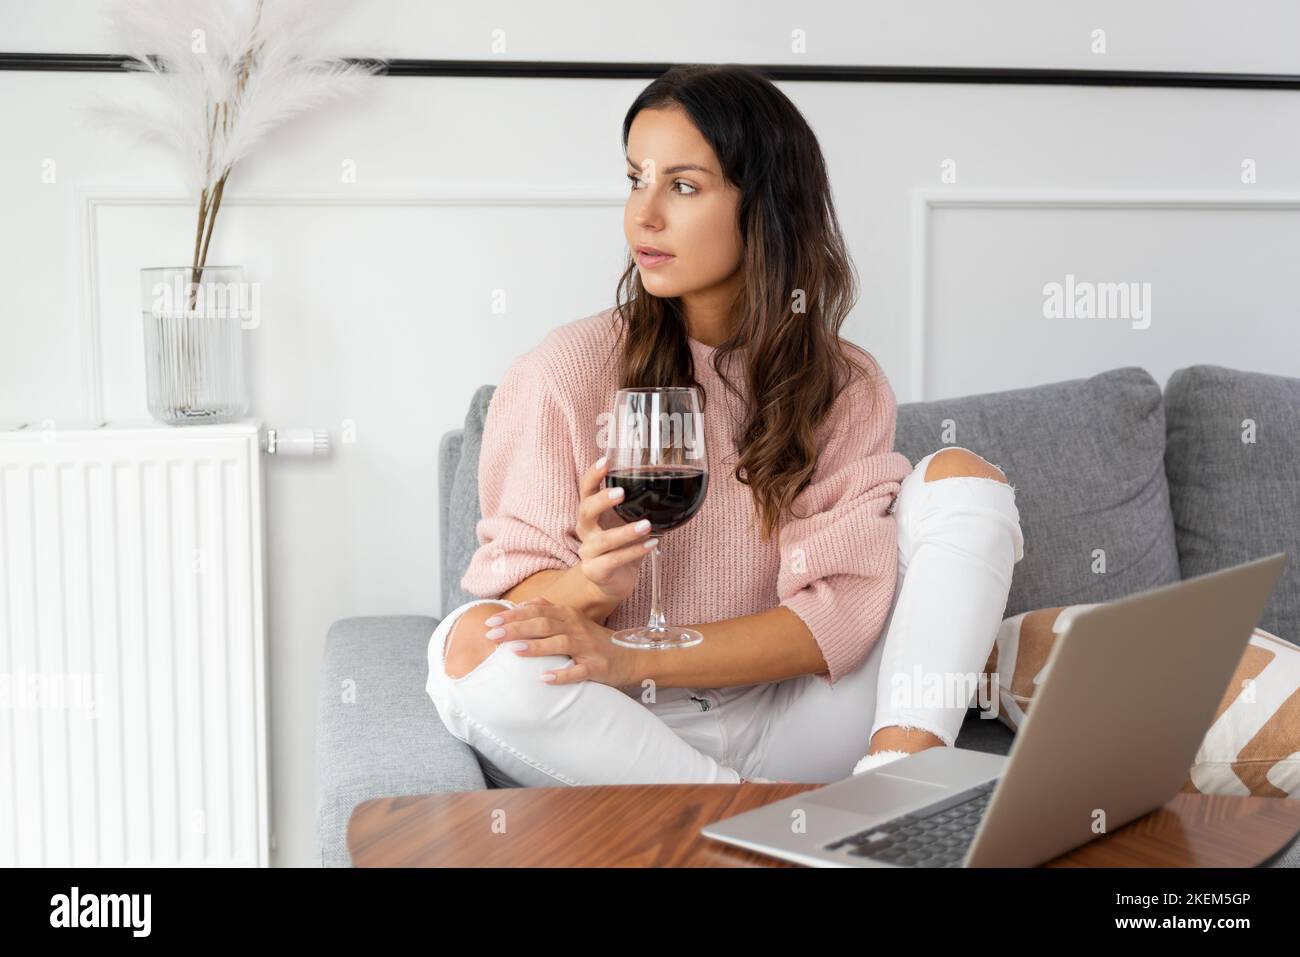 Donna seduta sul divano, riposante con un bicchiere di vino rosso Foto Stock